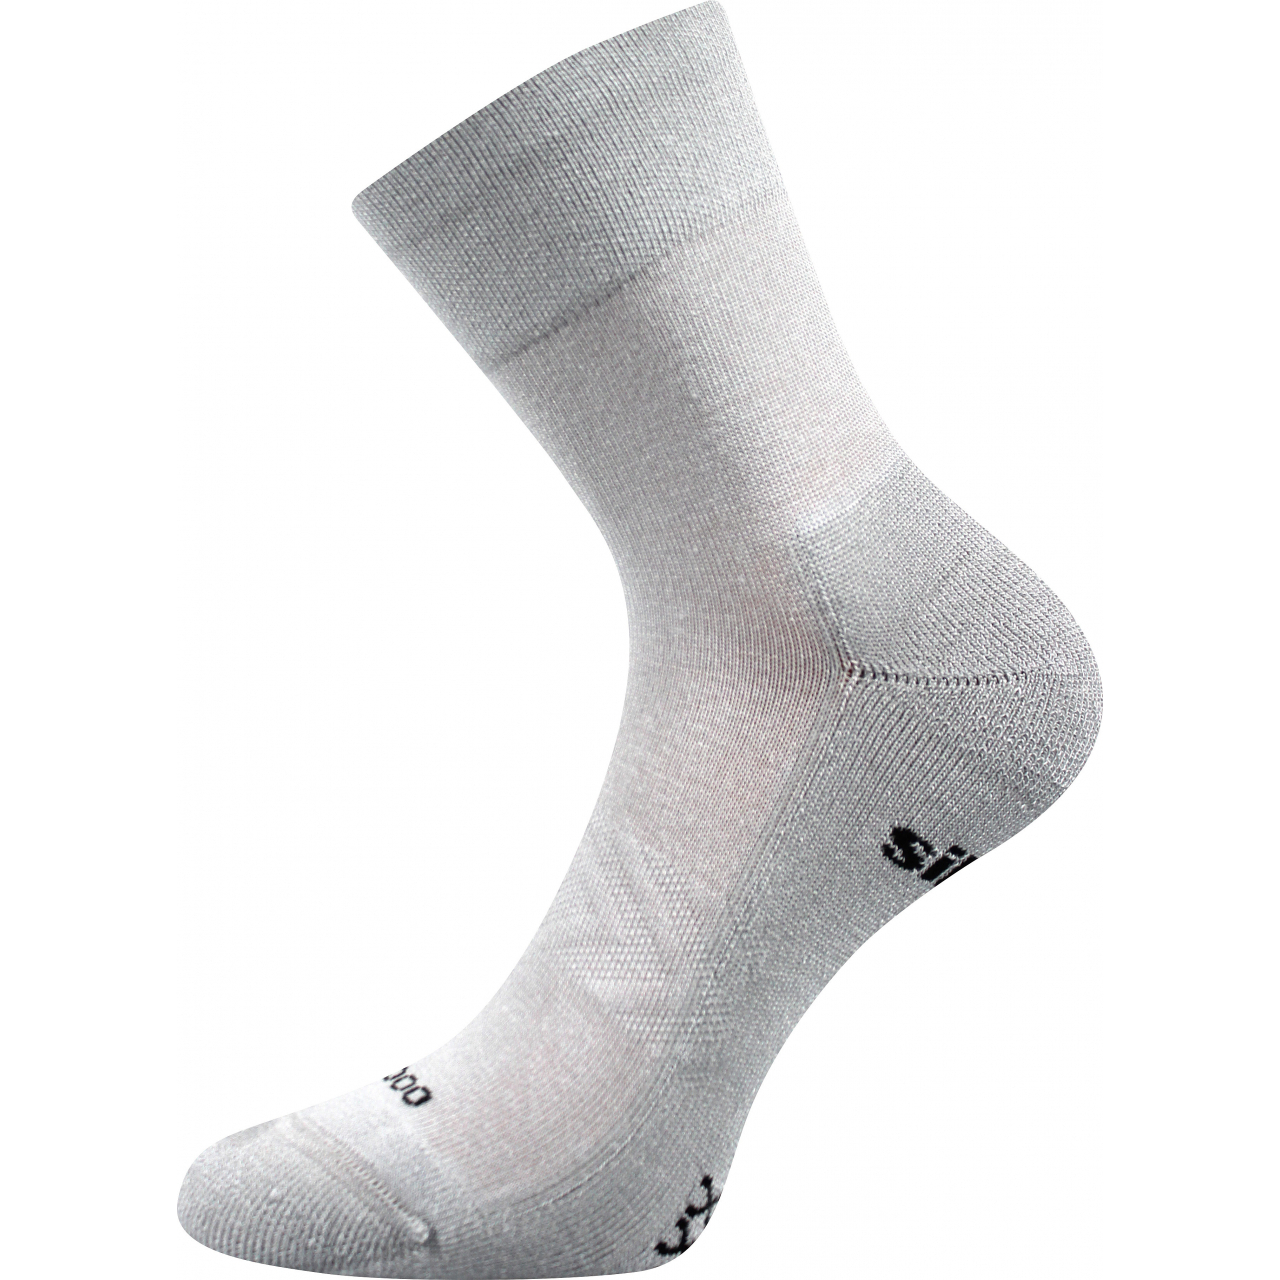 Ponožky sportovní unisex Voxx Esencis - světle šedé, 39-42